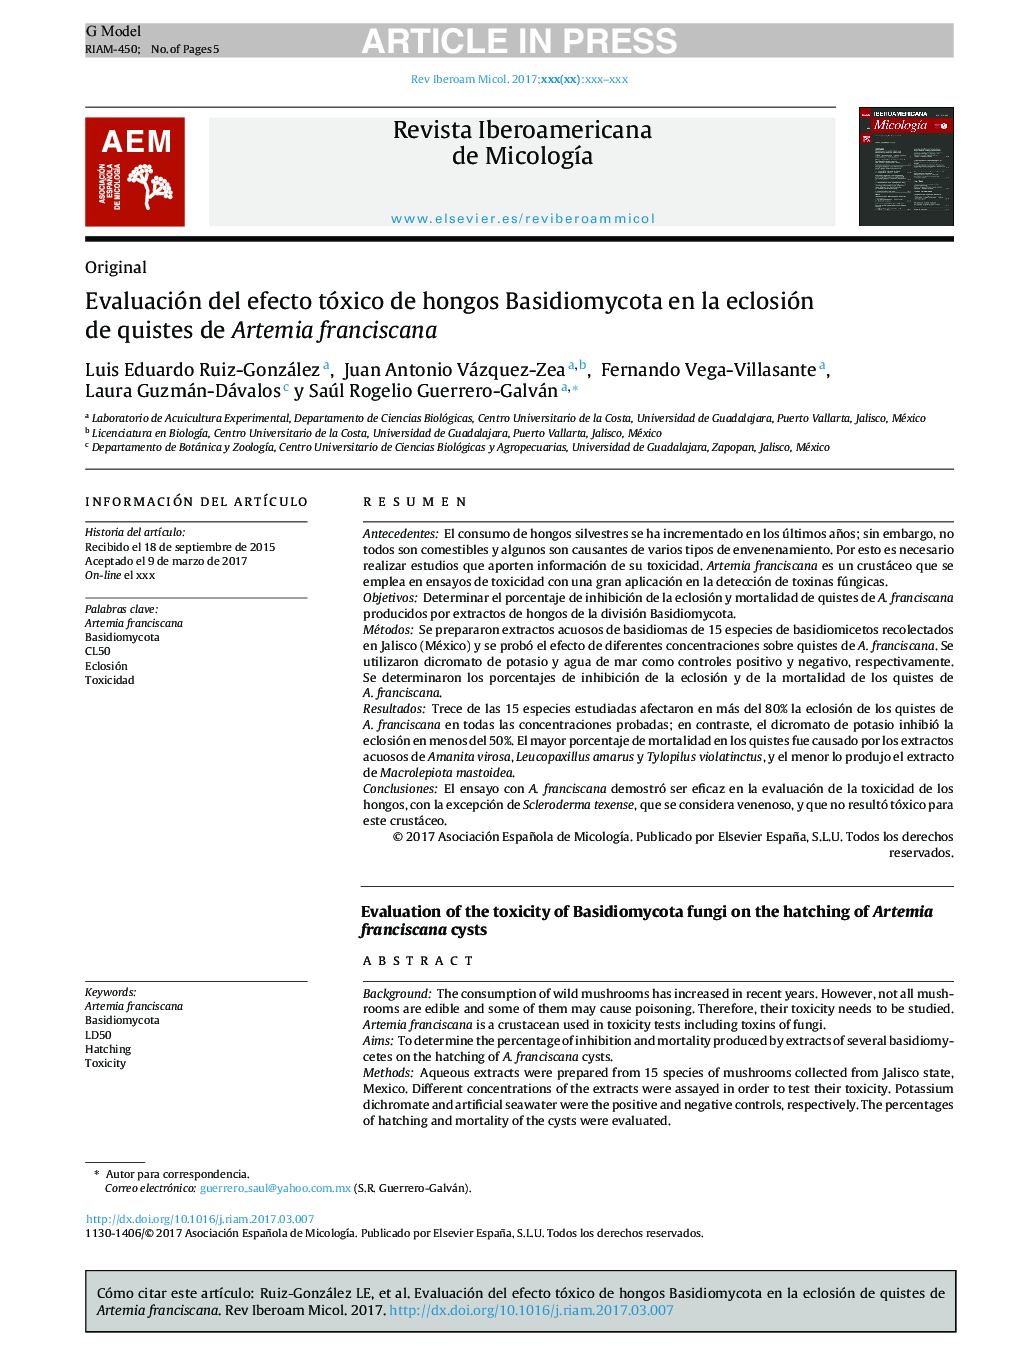 Evaluación del efecto tóxico de hongos Basidiomycota en la eclosión de quistes de Artemia franciscana